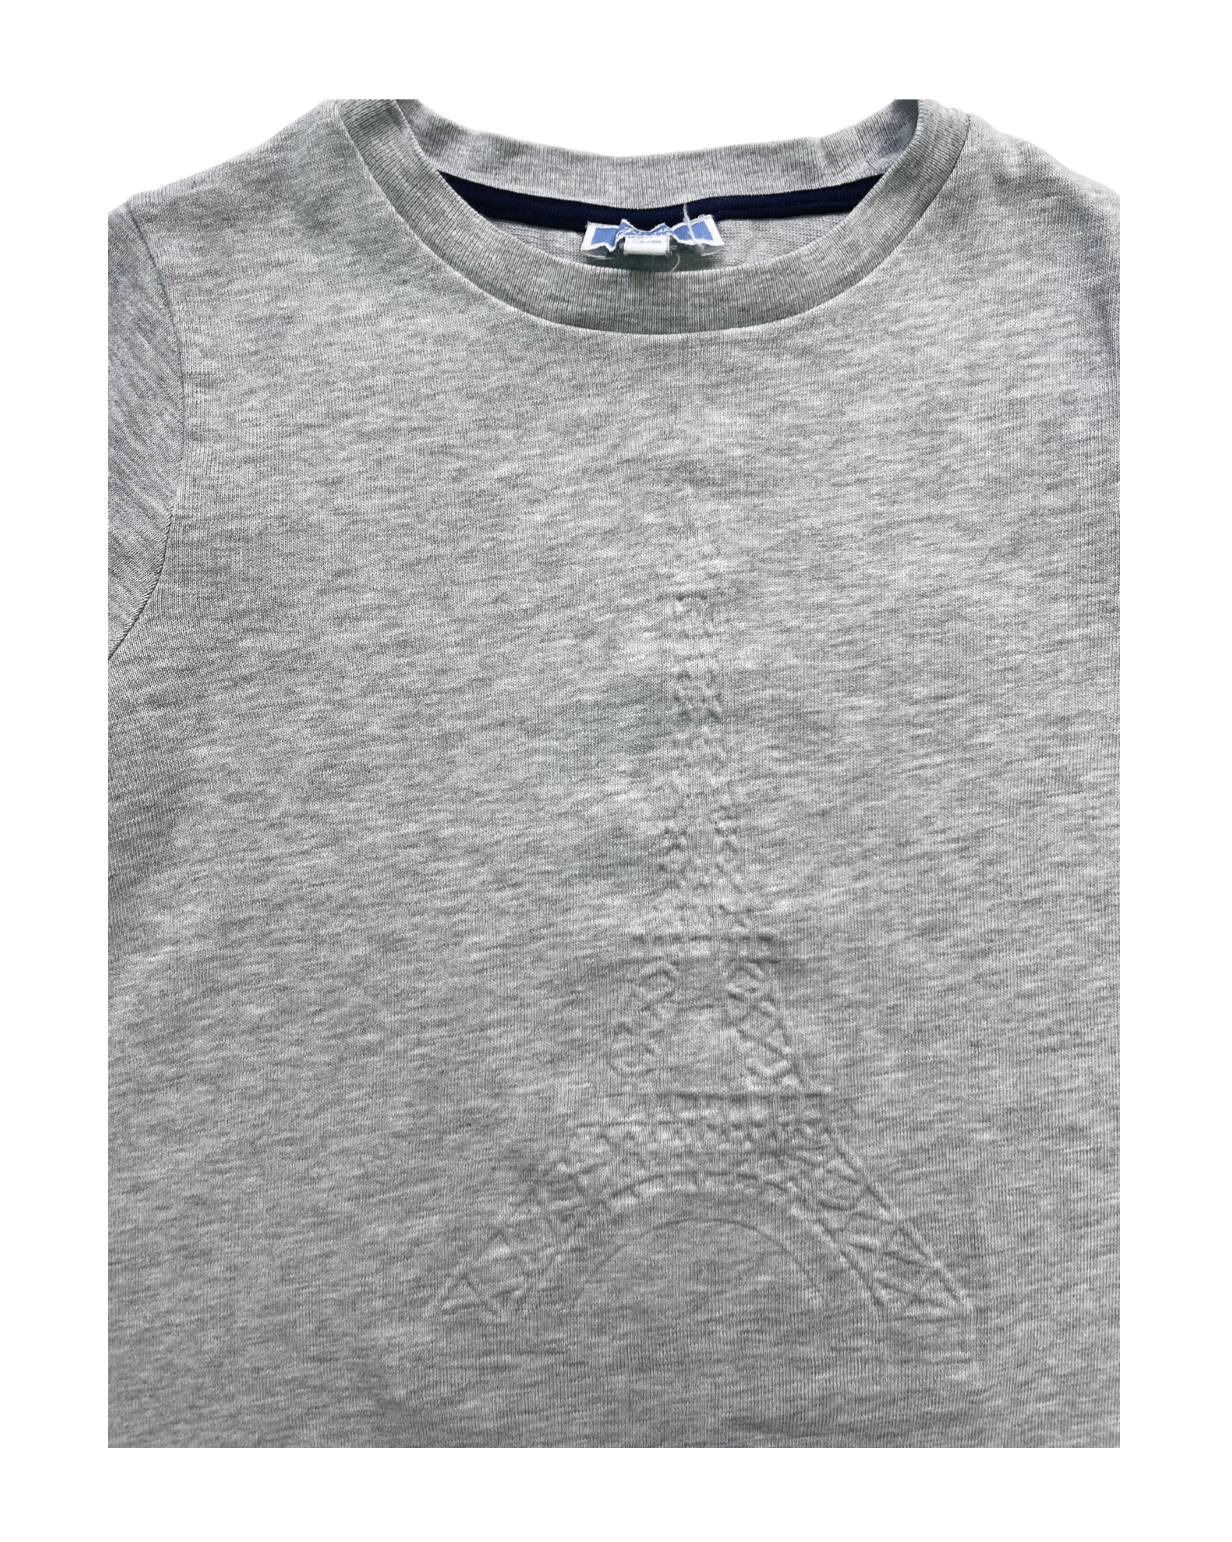 JACADI - T-shirt manches longues gris Tour Eiffel en relief - 6 ans